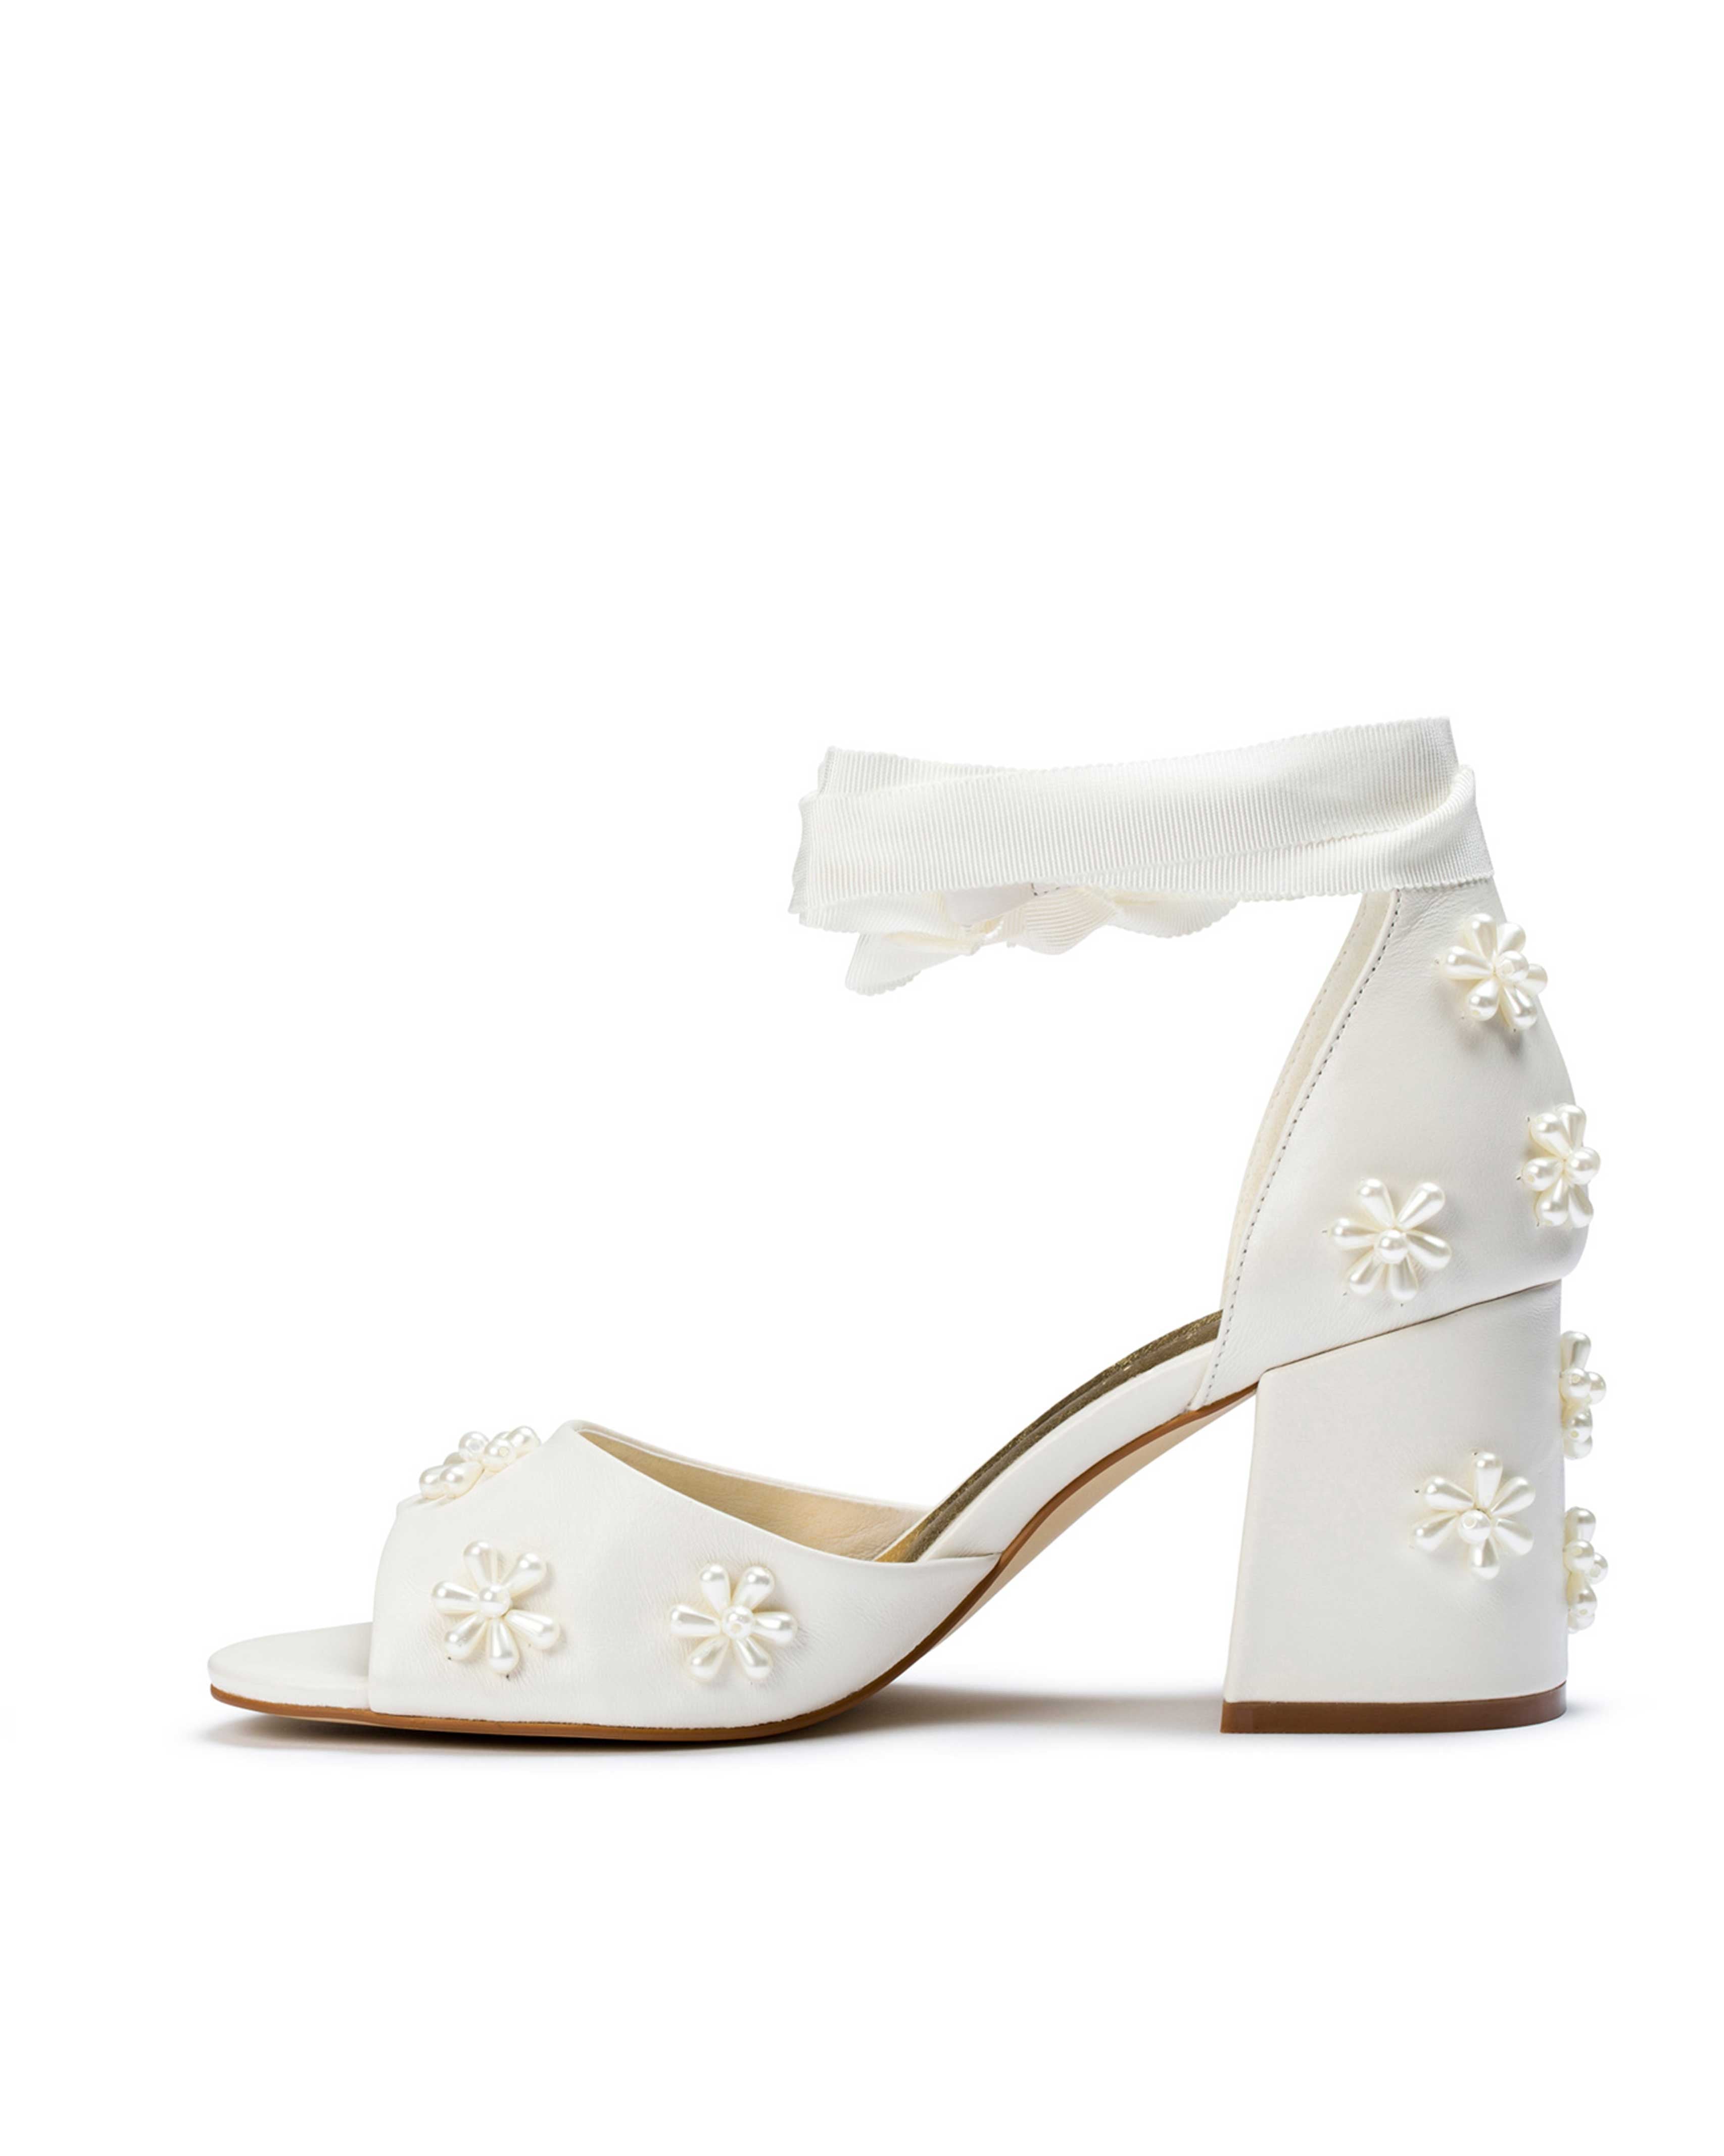 Ladies pearl flower shoes, low heels, beaded wedding shoes, block heel ...